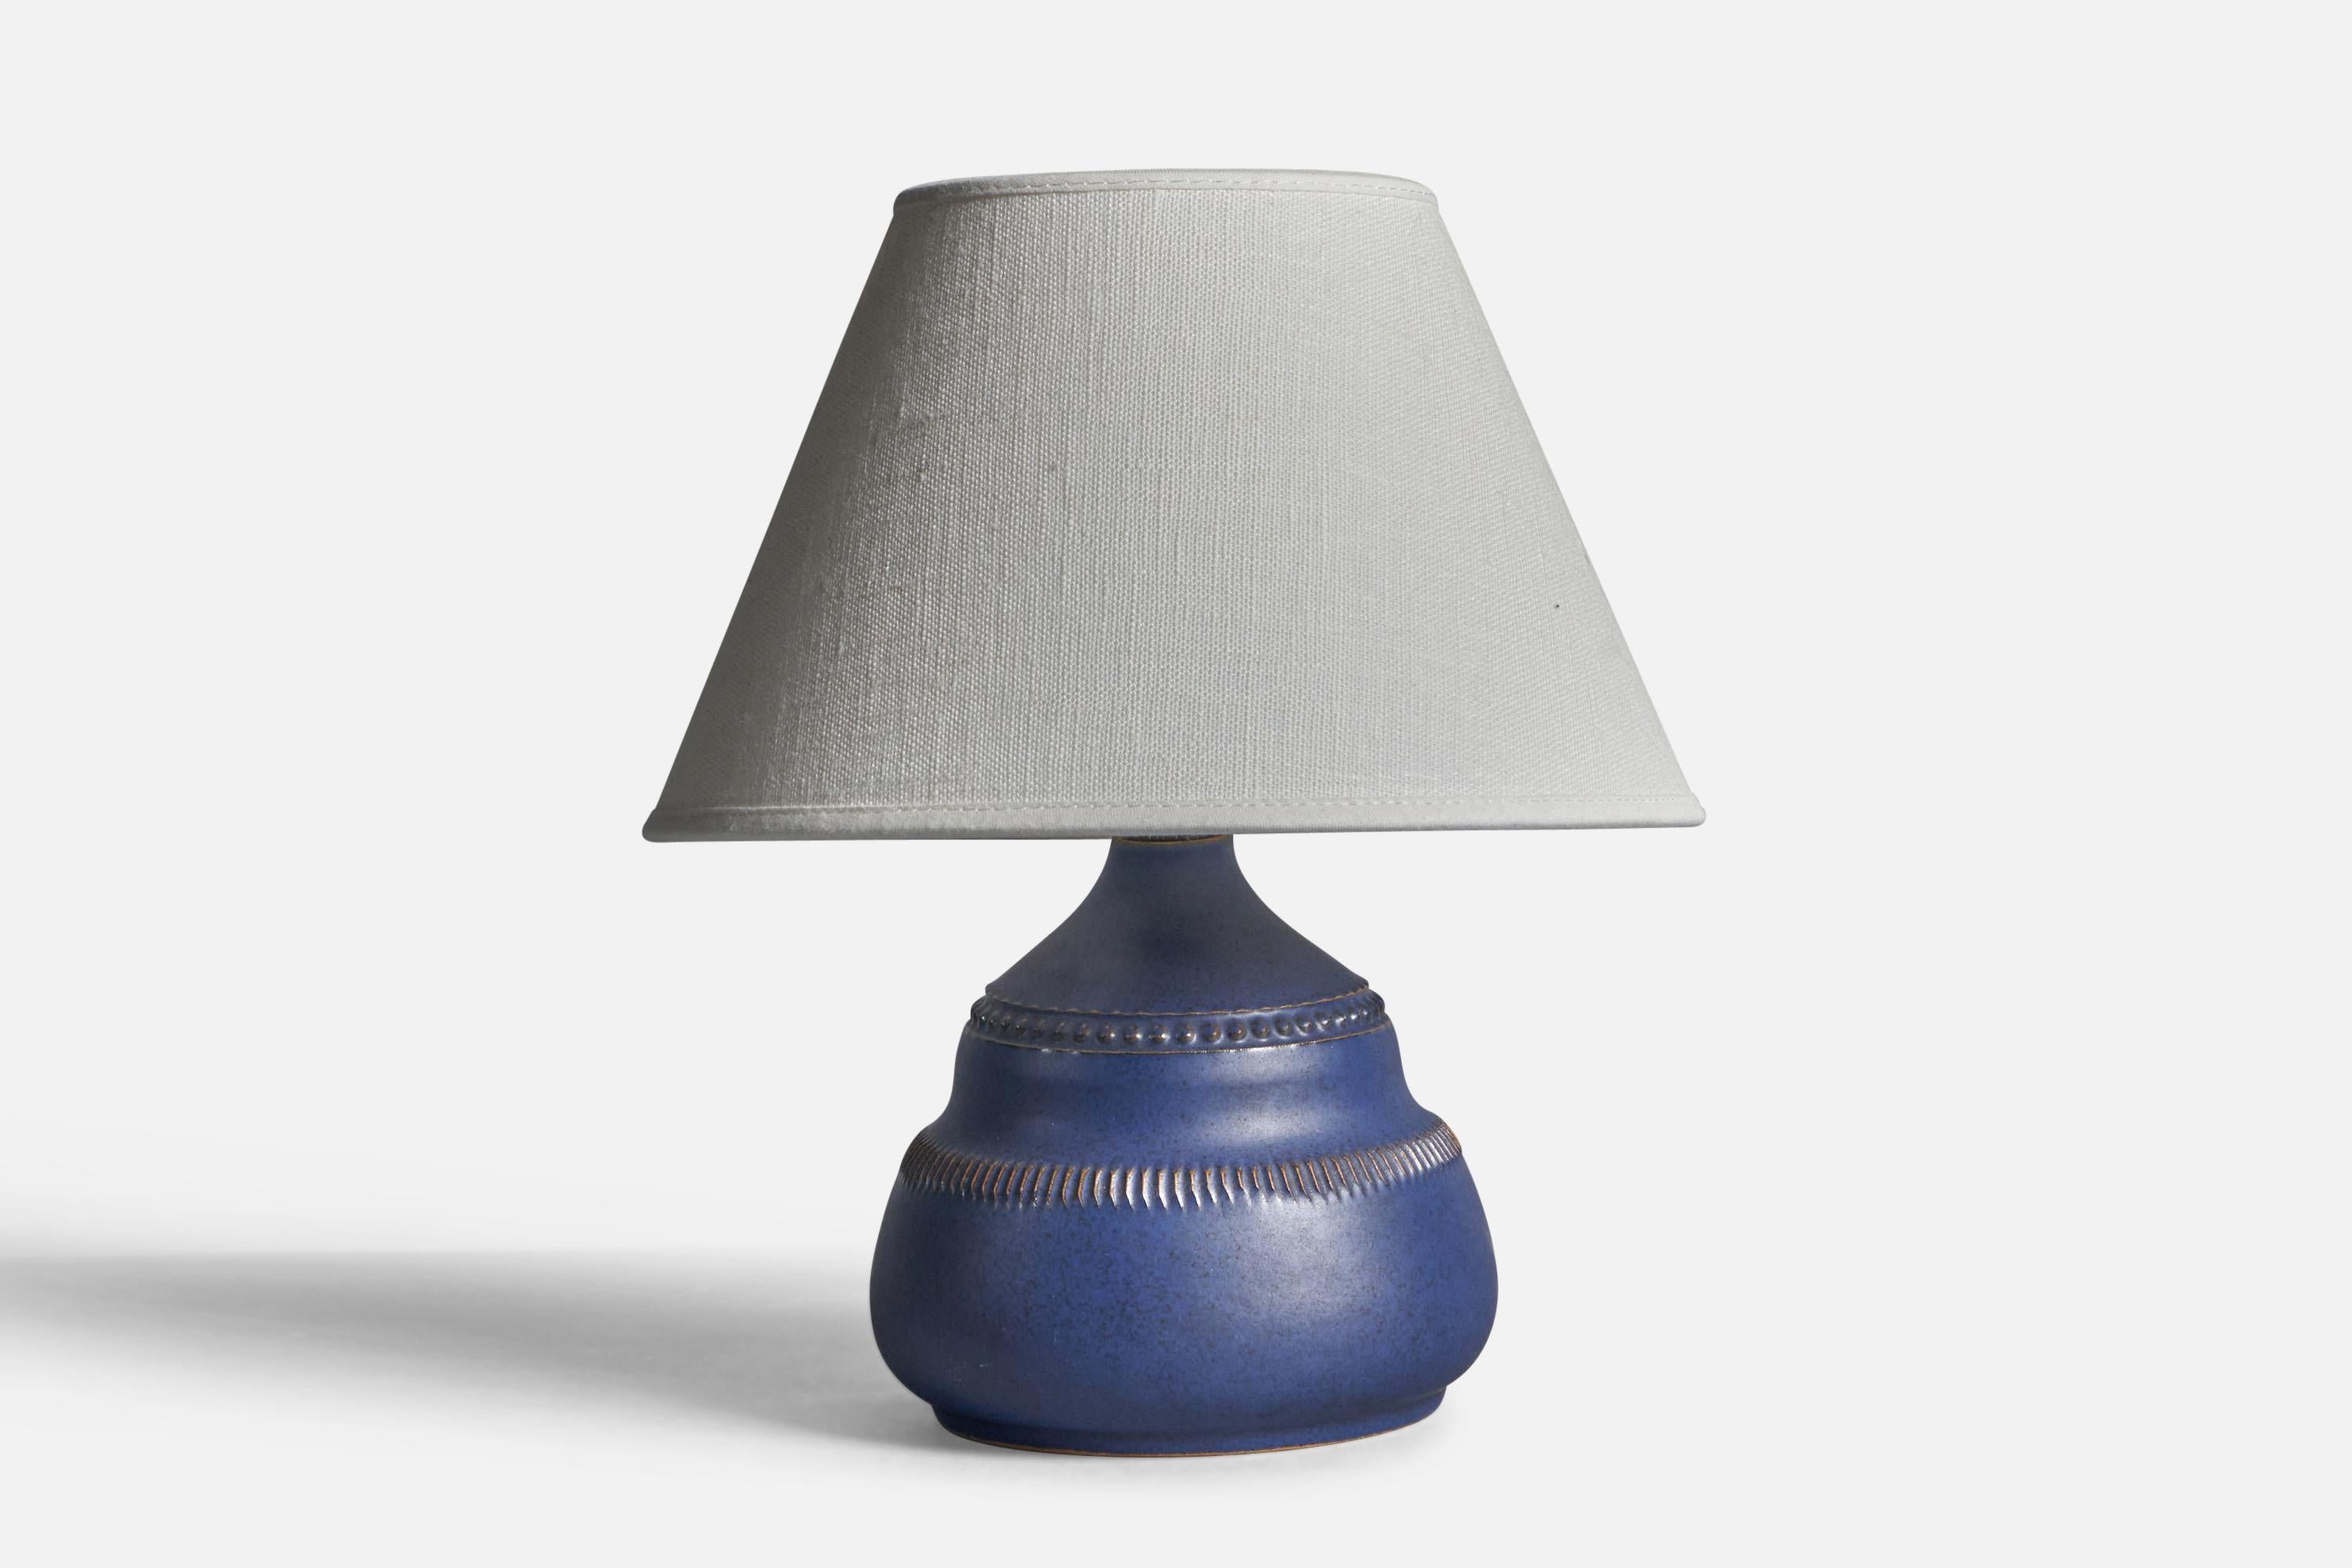 Lampe de table en grès émaillé bleu, conçue et produite par Klase Höganäs, Suède, années 1960.

Dimensions de la lampe (pouces) : 6.5